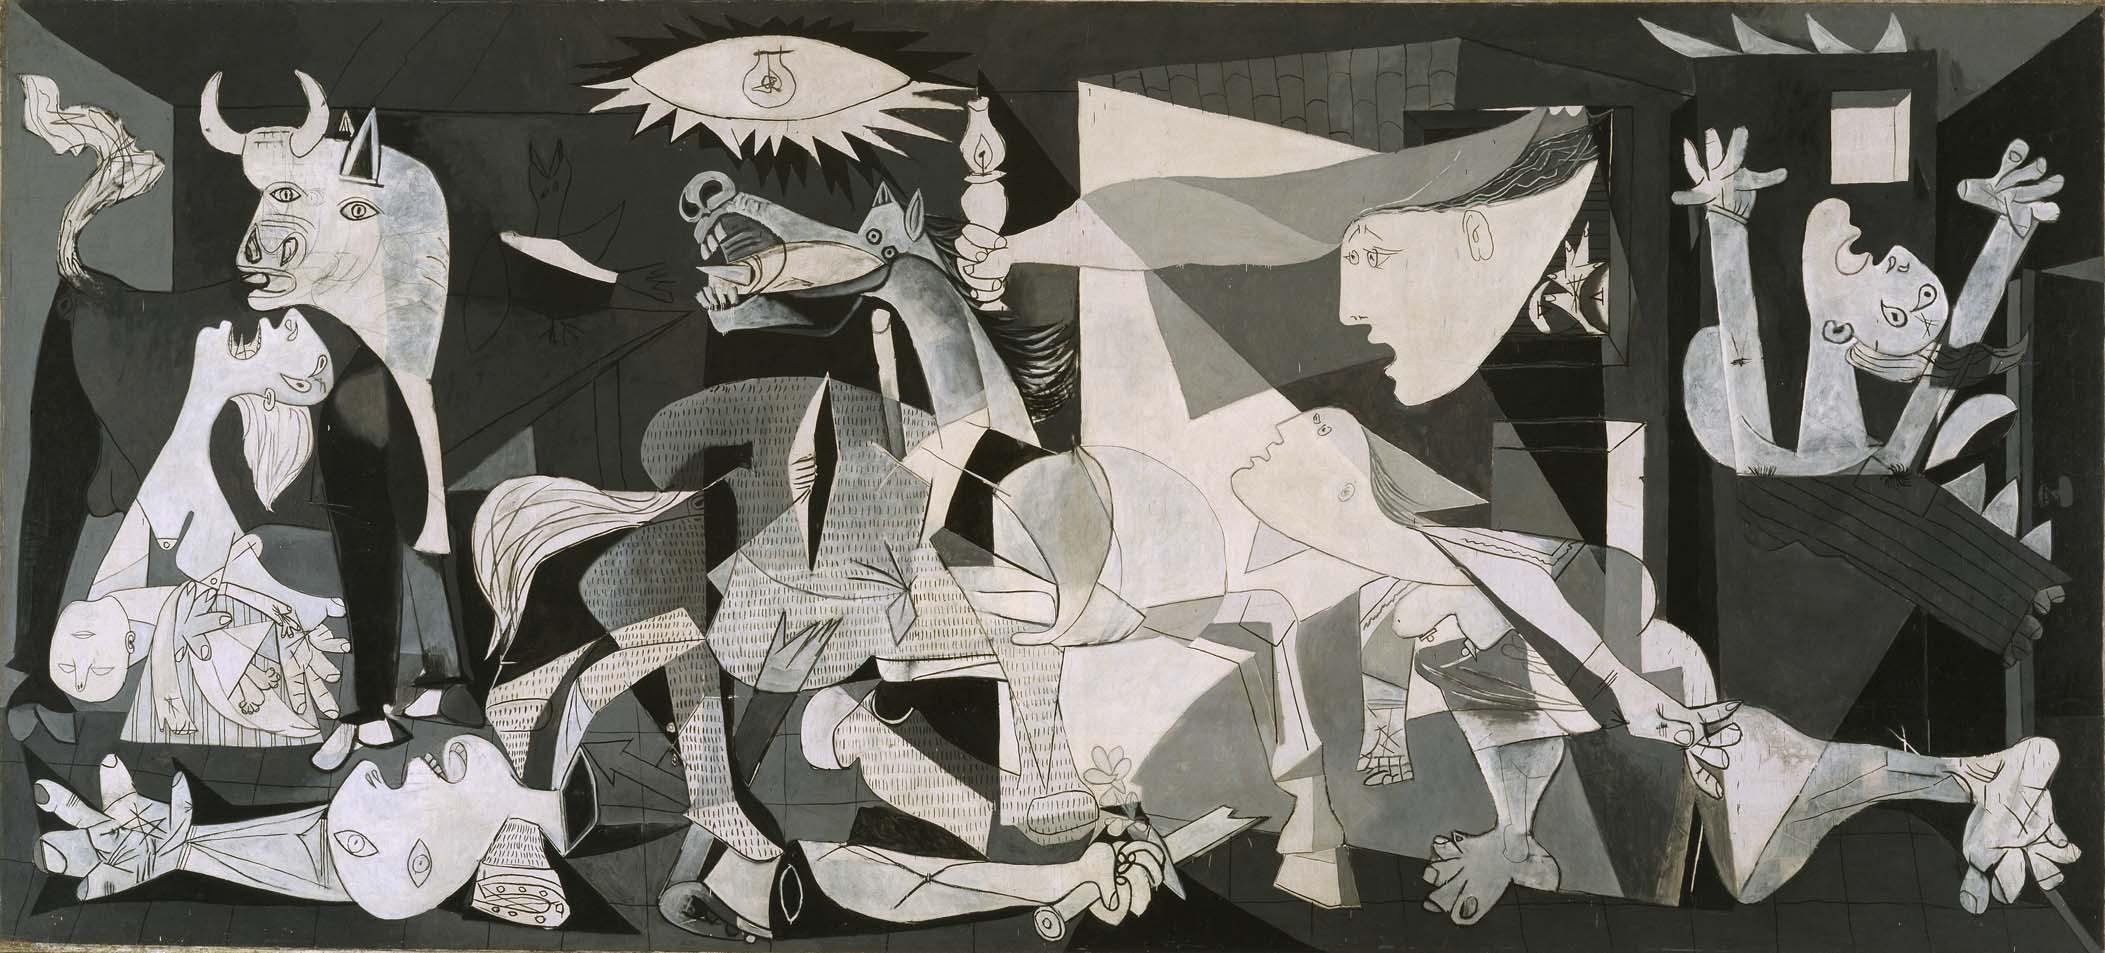 Guernica by Pablo Picasso - 1937 - 349 cm × 776 cm Museo Nacional Centro de Arte Reina Sofia